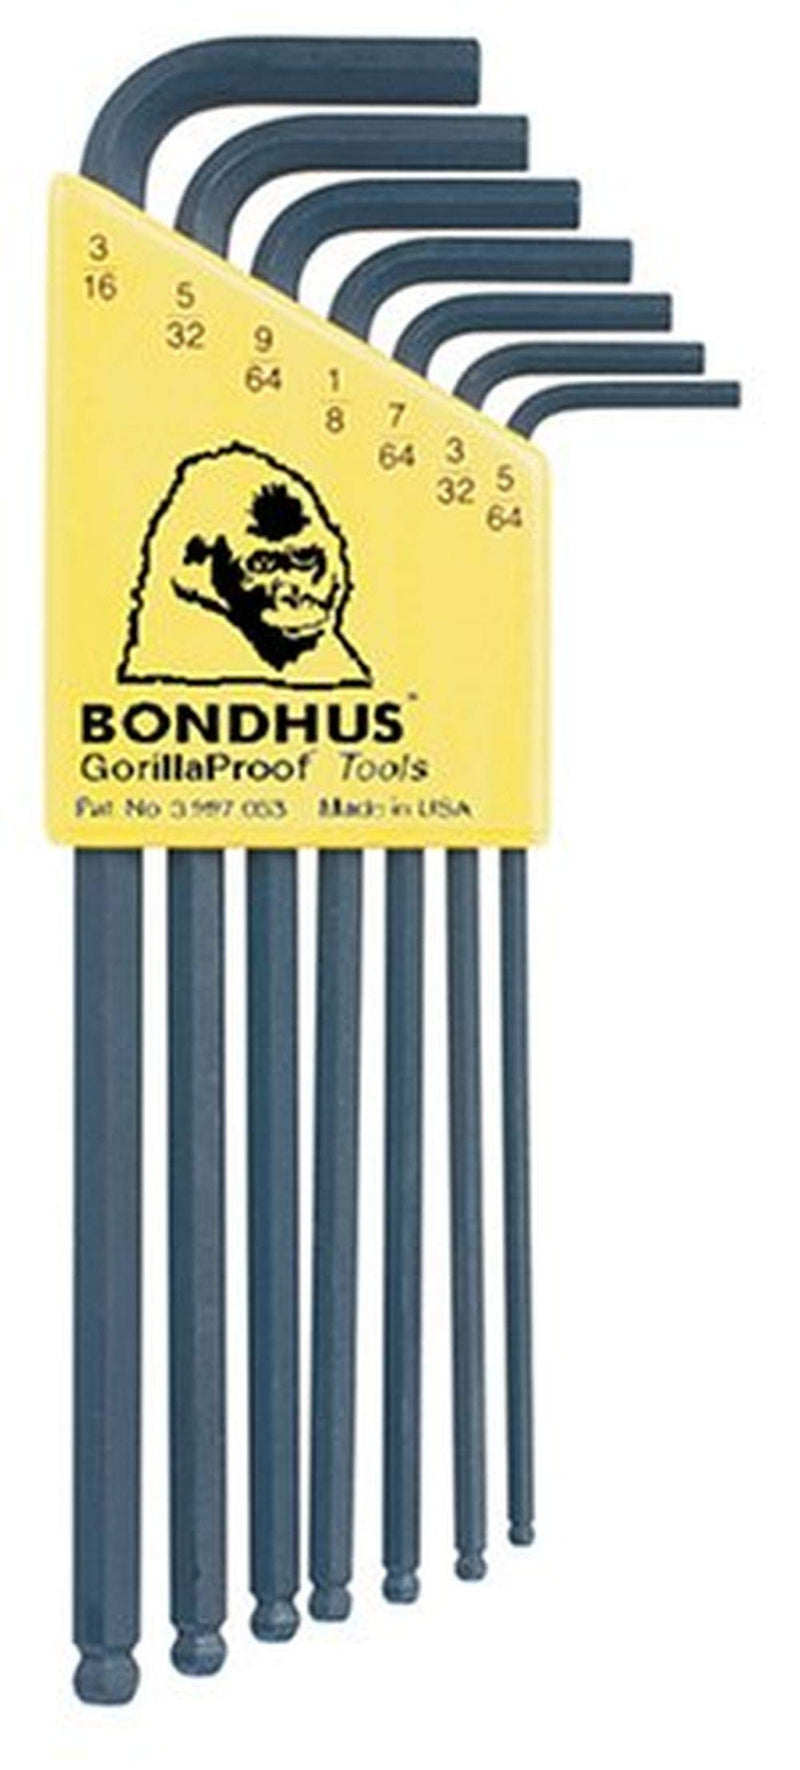 Bondhus 10945 Set of 7 Balldriver L-wrenches, sizes 5/64-3/16"